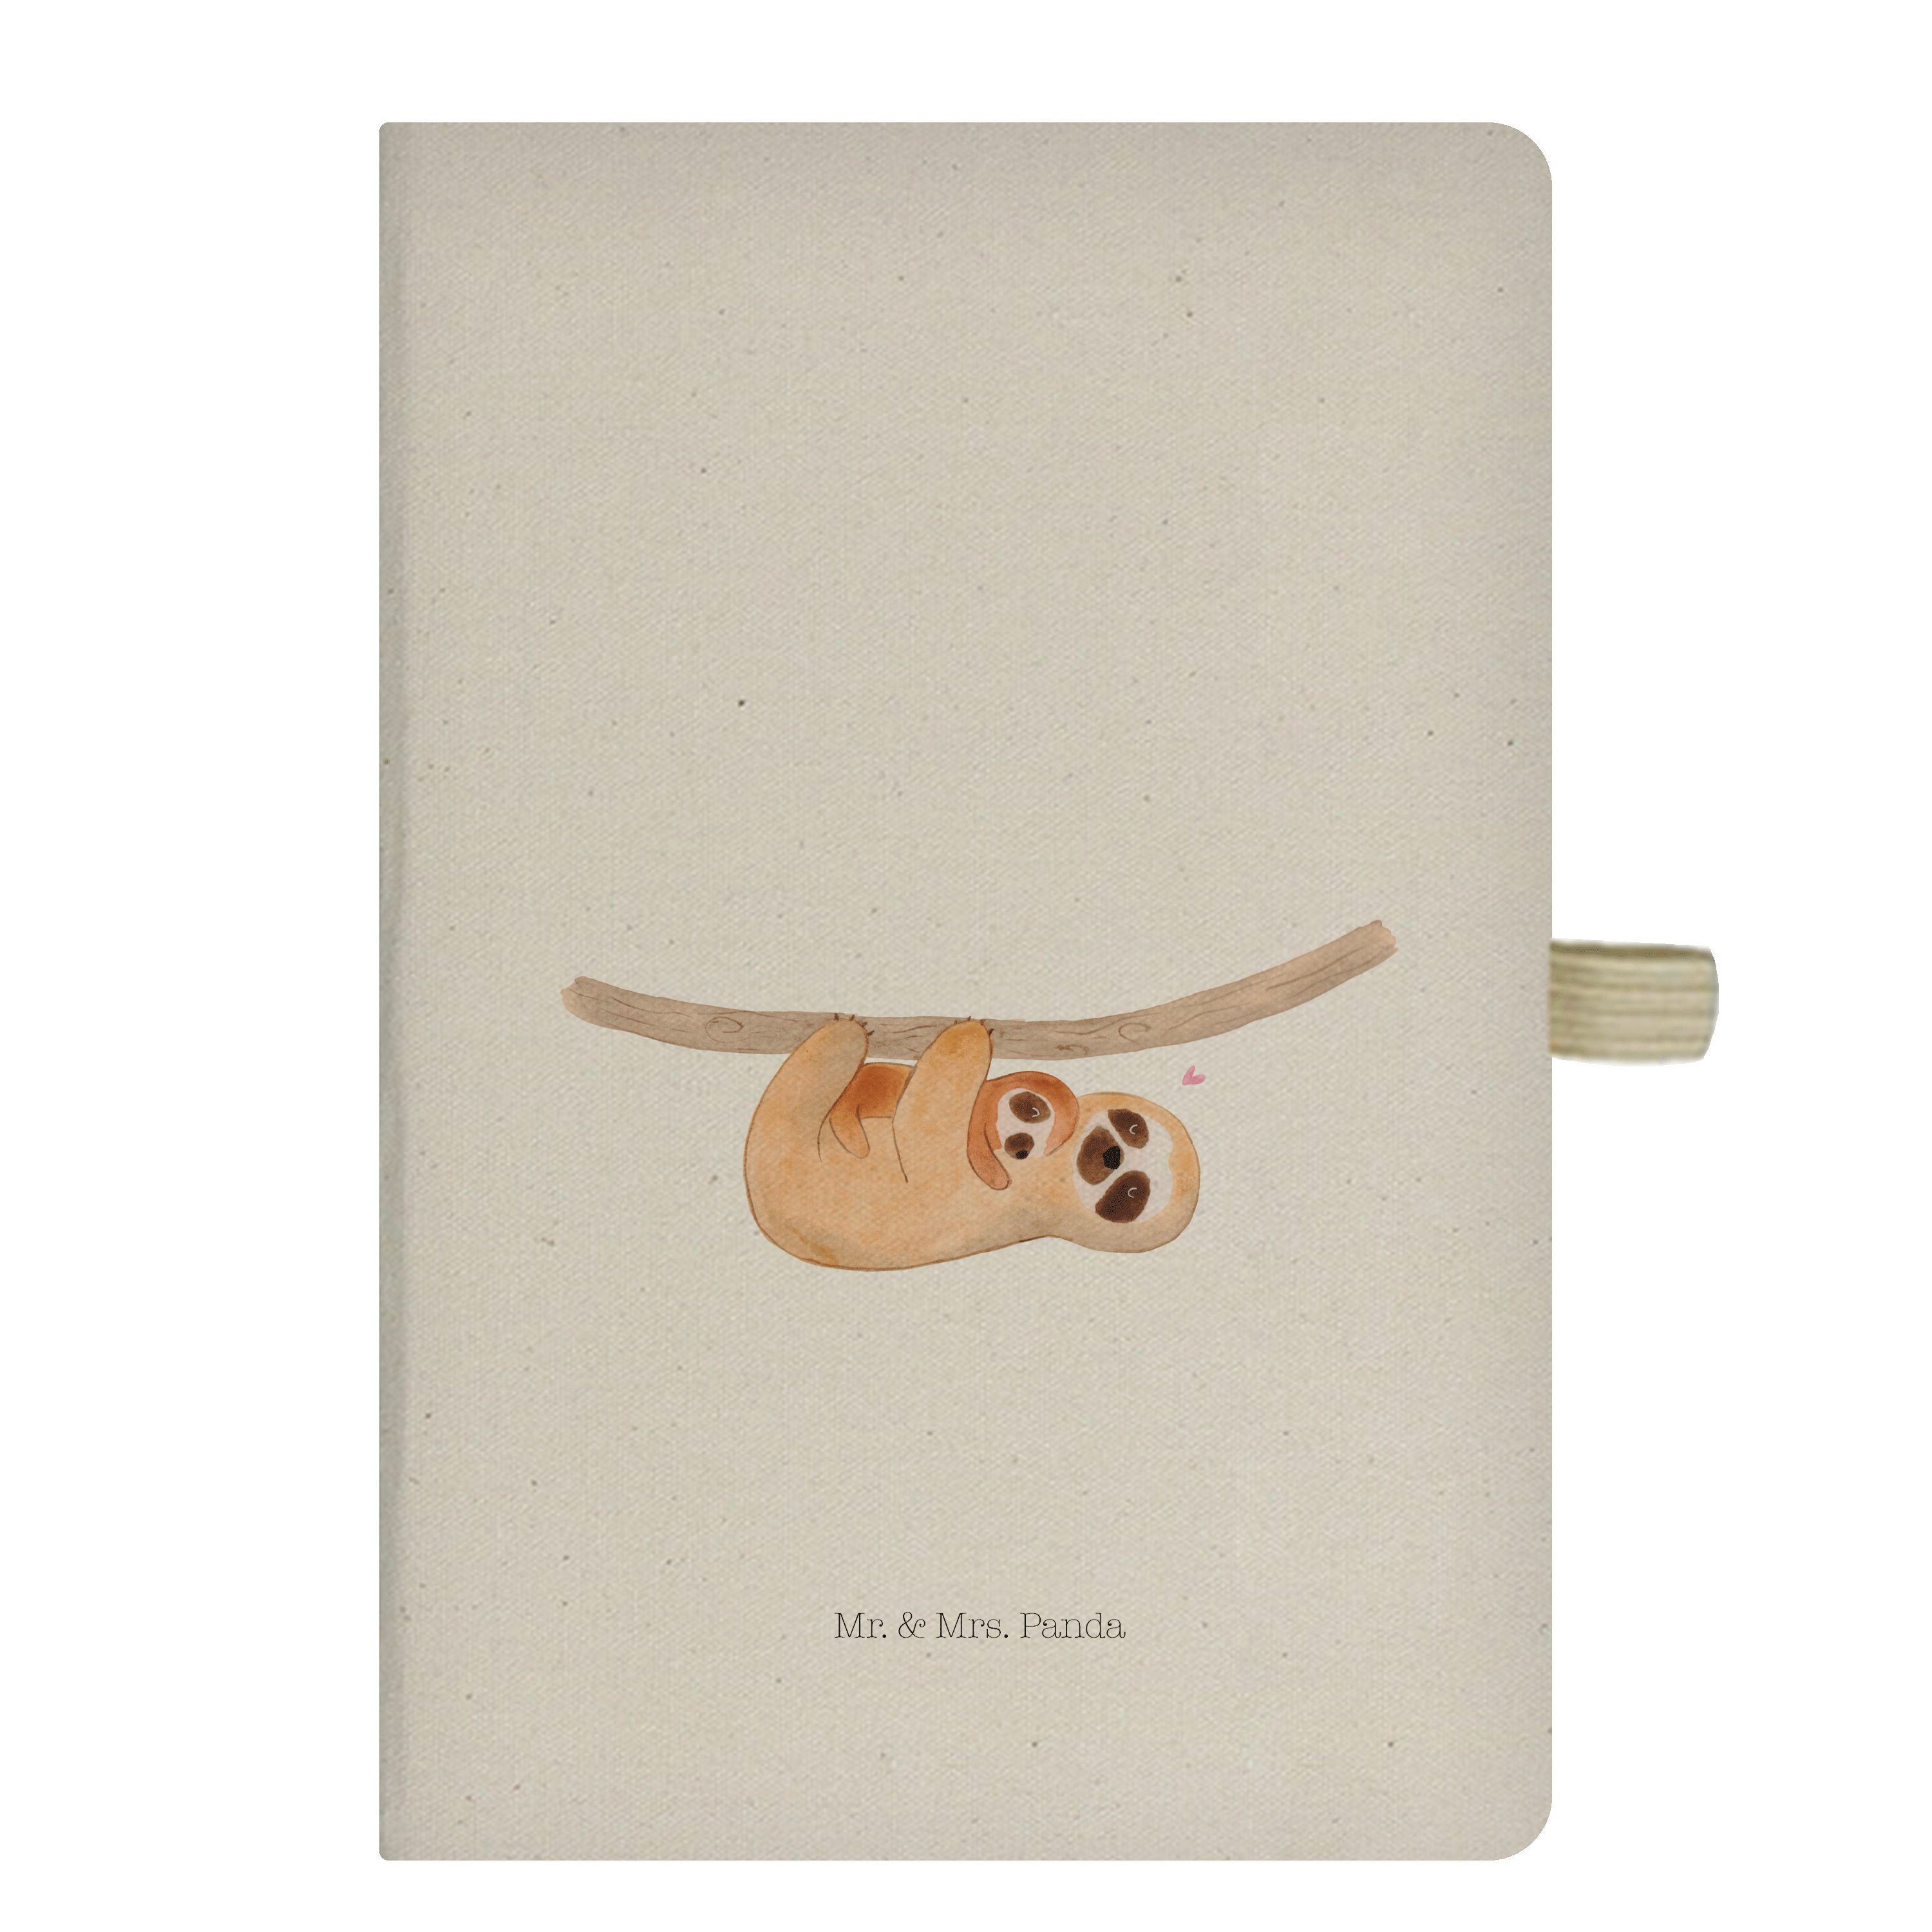 Mr. & Mrs. Panda Notizbuch Faultier Kind - Transparent - Geschenk, Liebe, Niedlichkeit, verliebt Mr. & Mrs. Panda, Stilvolles Design